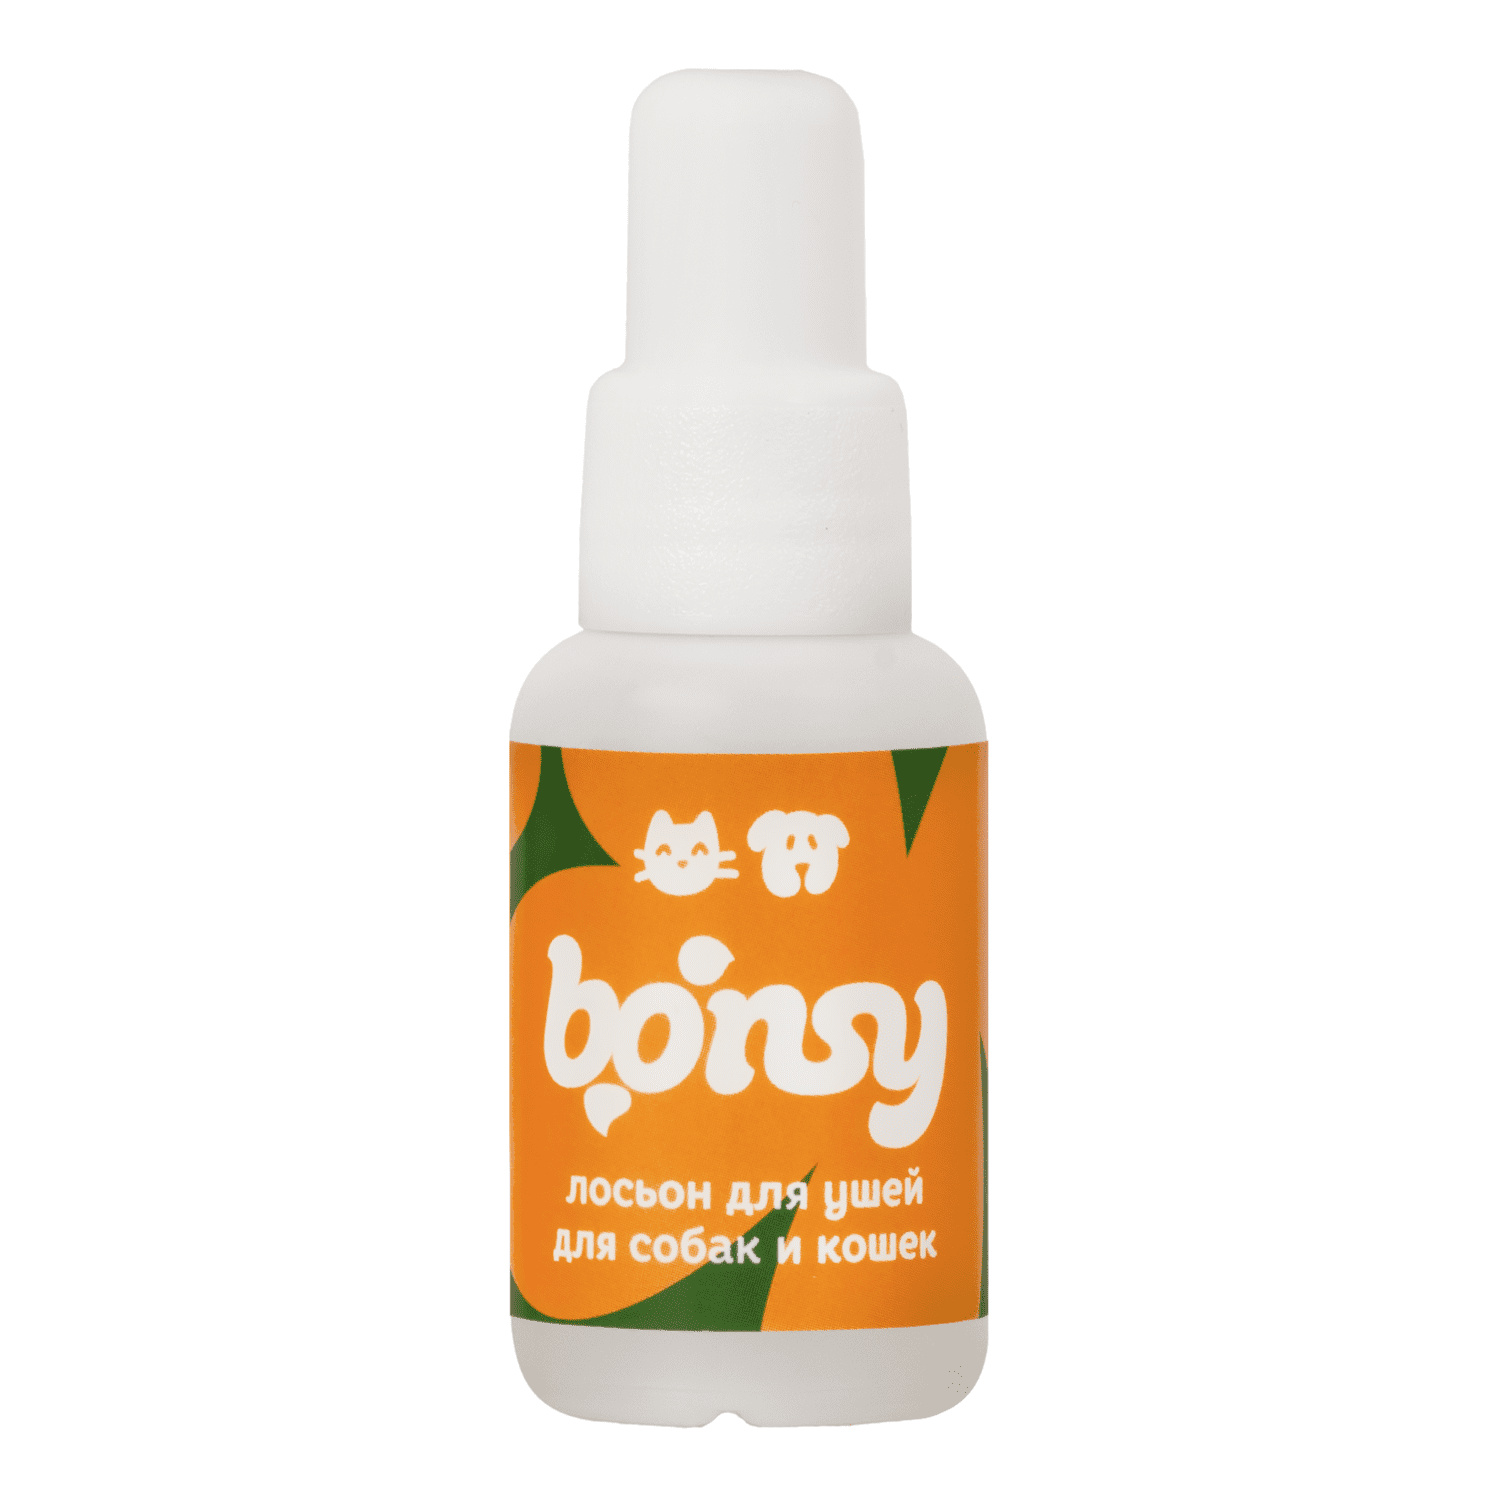 Bonsy Bonsy лосьон для очистки ушей кошек и собак (30 г) bonsy bonsy антипаразитарный биоошейник для котят и кошек вишневый 30 г